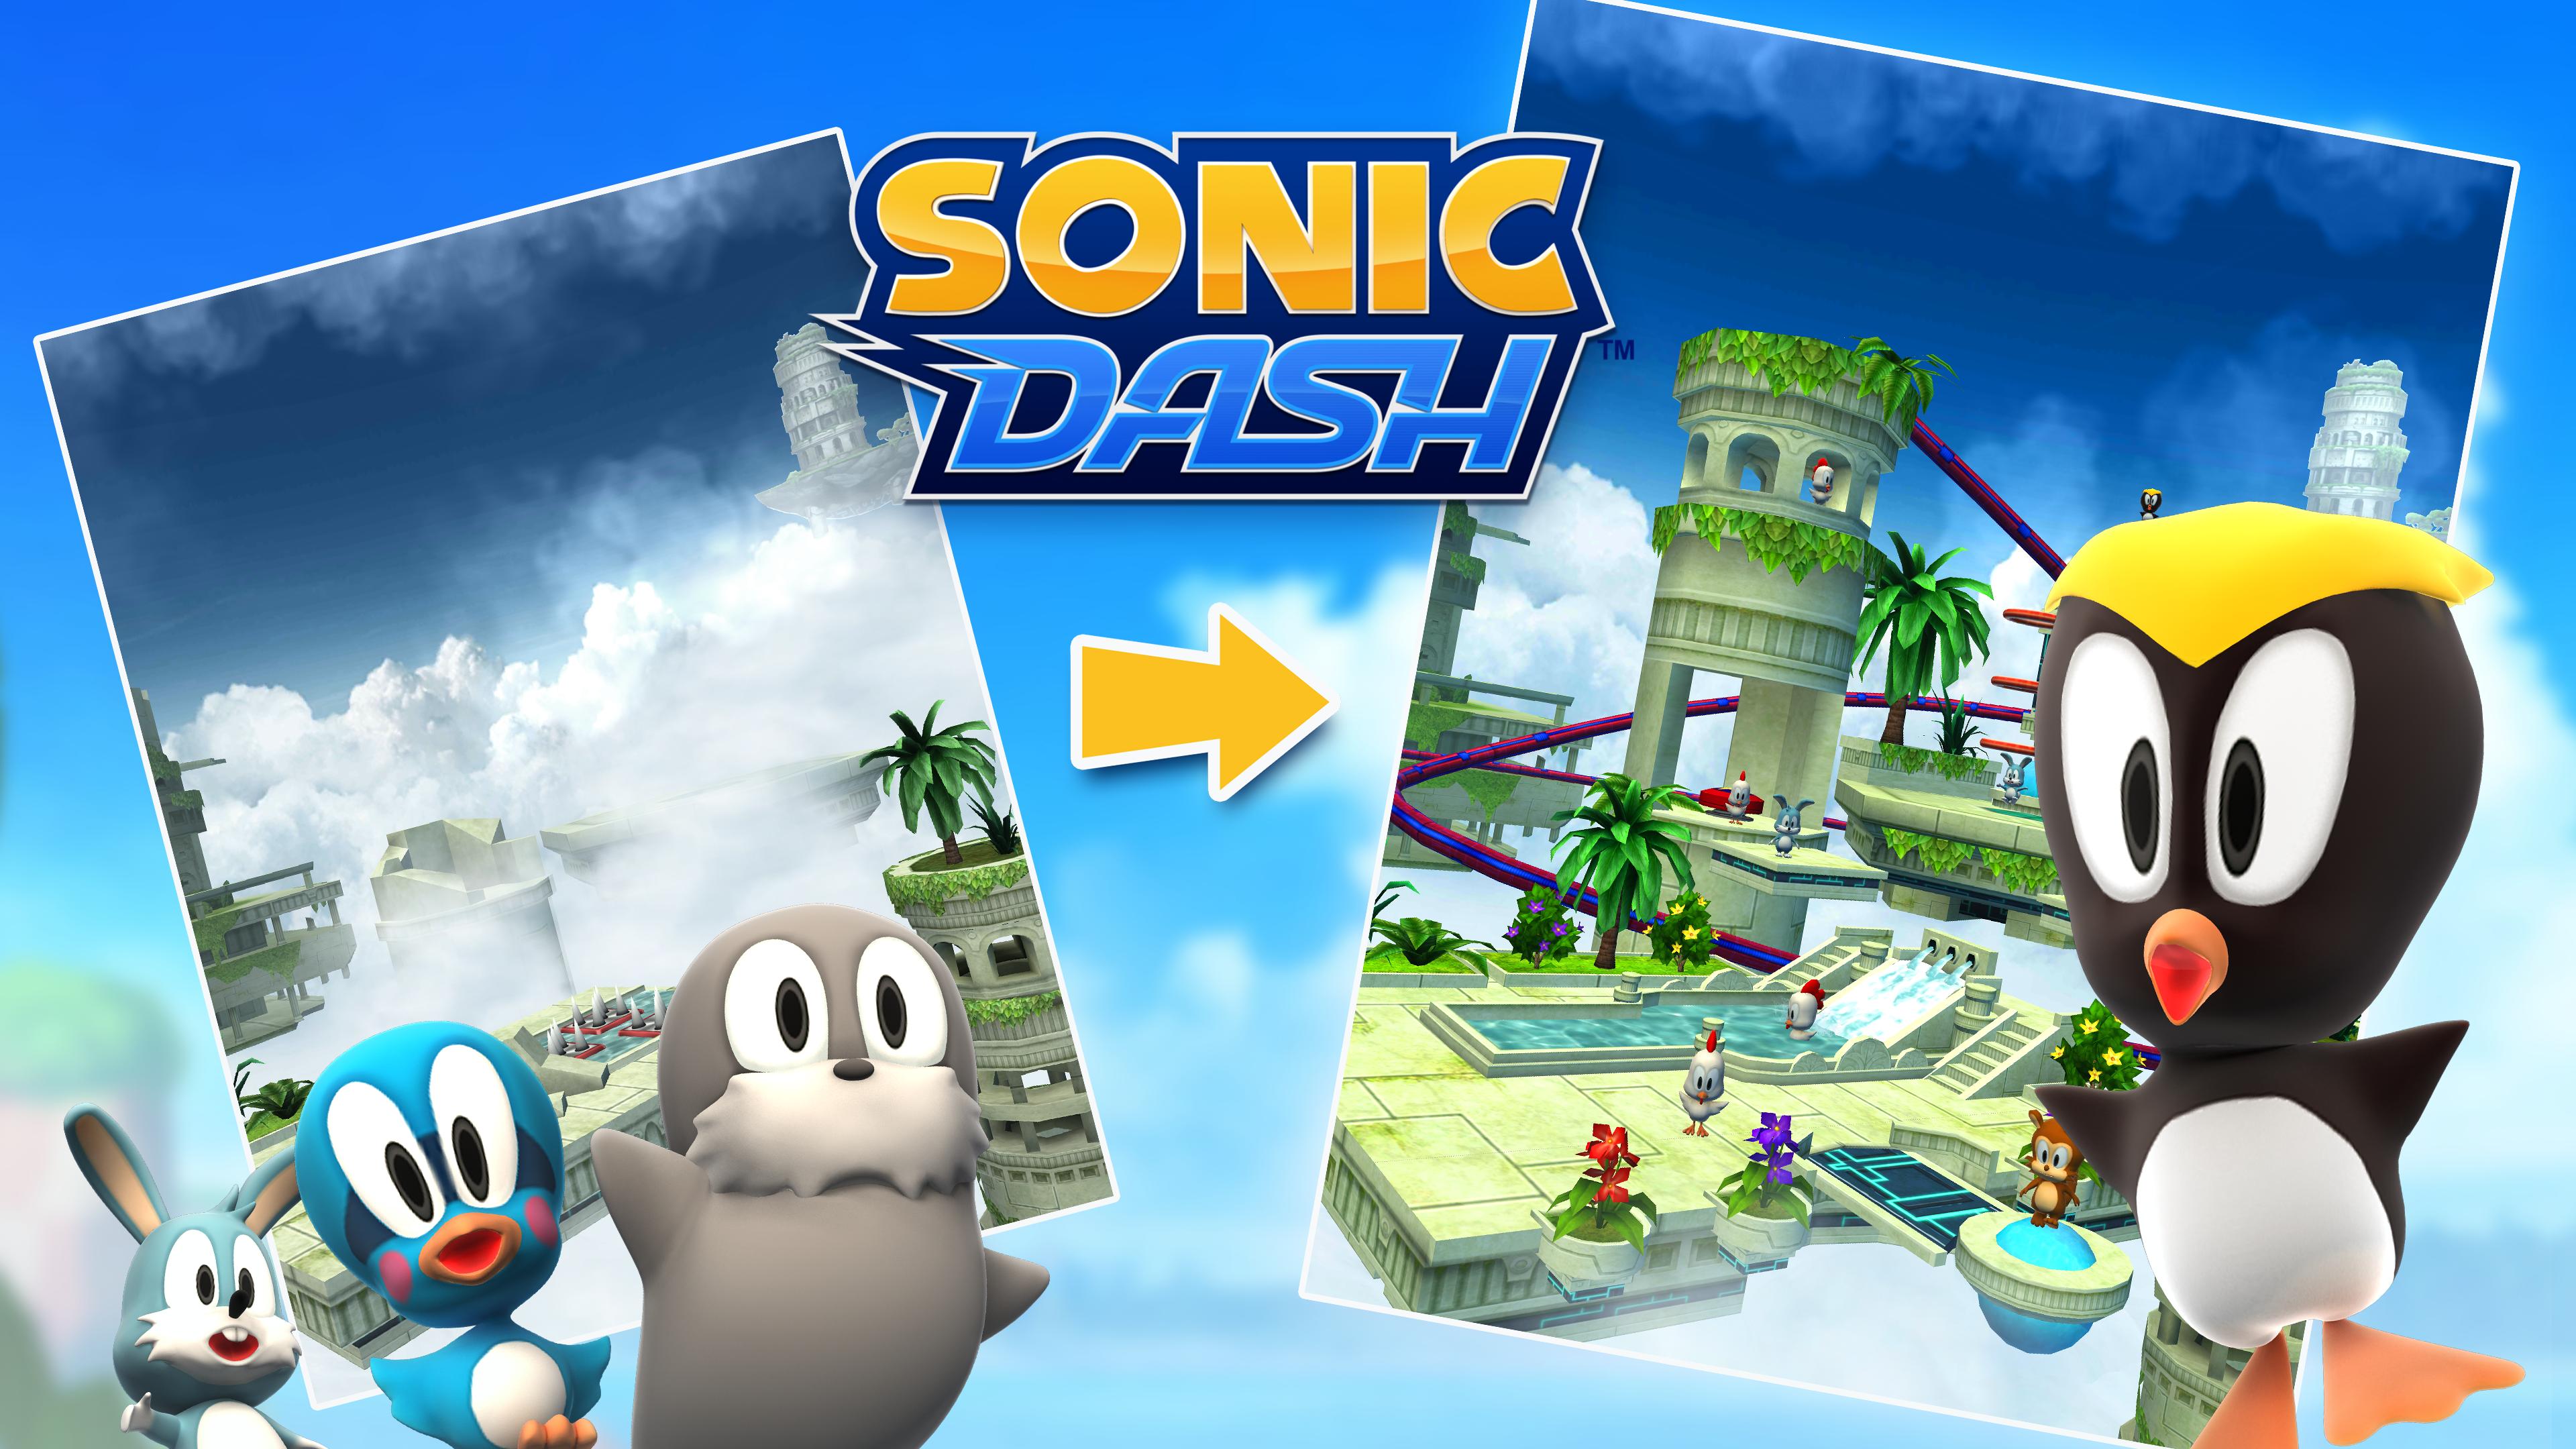 Sonic Dash - Endless Running & Racing Game 4.14.0 Screenshot 24